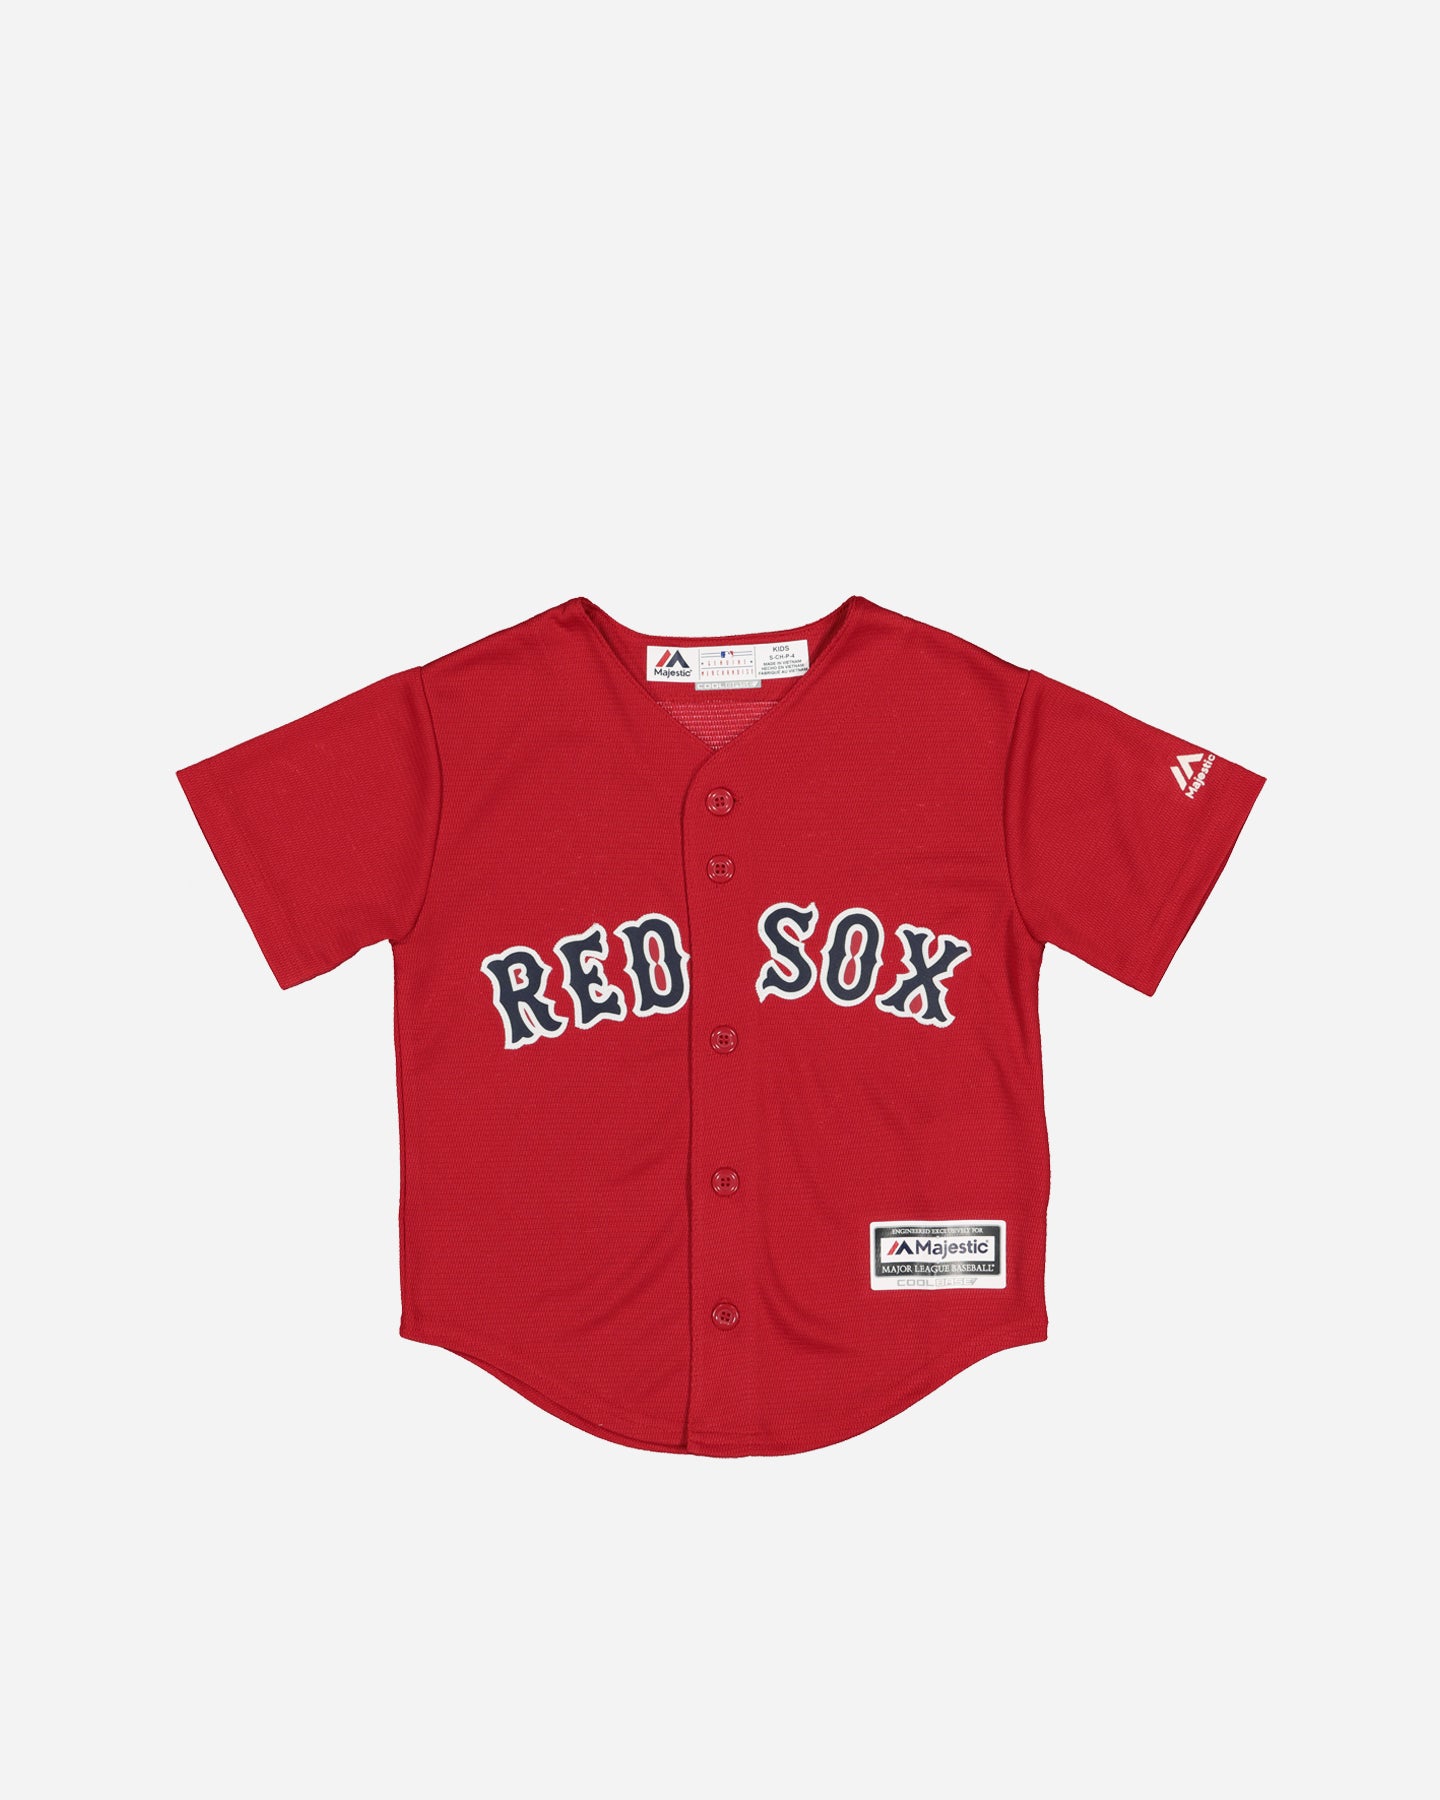 boston red sox replica jersey